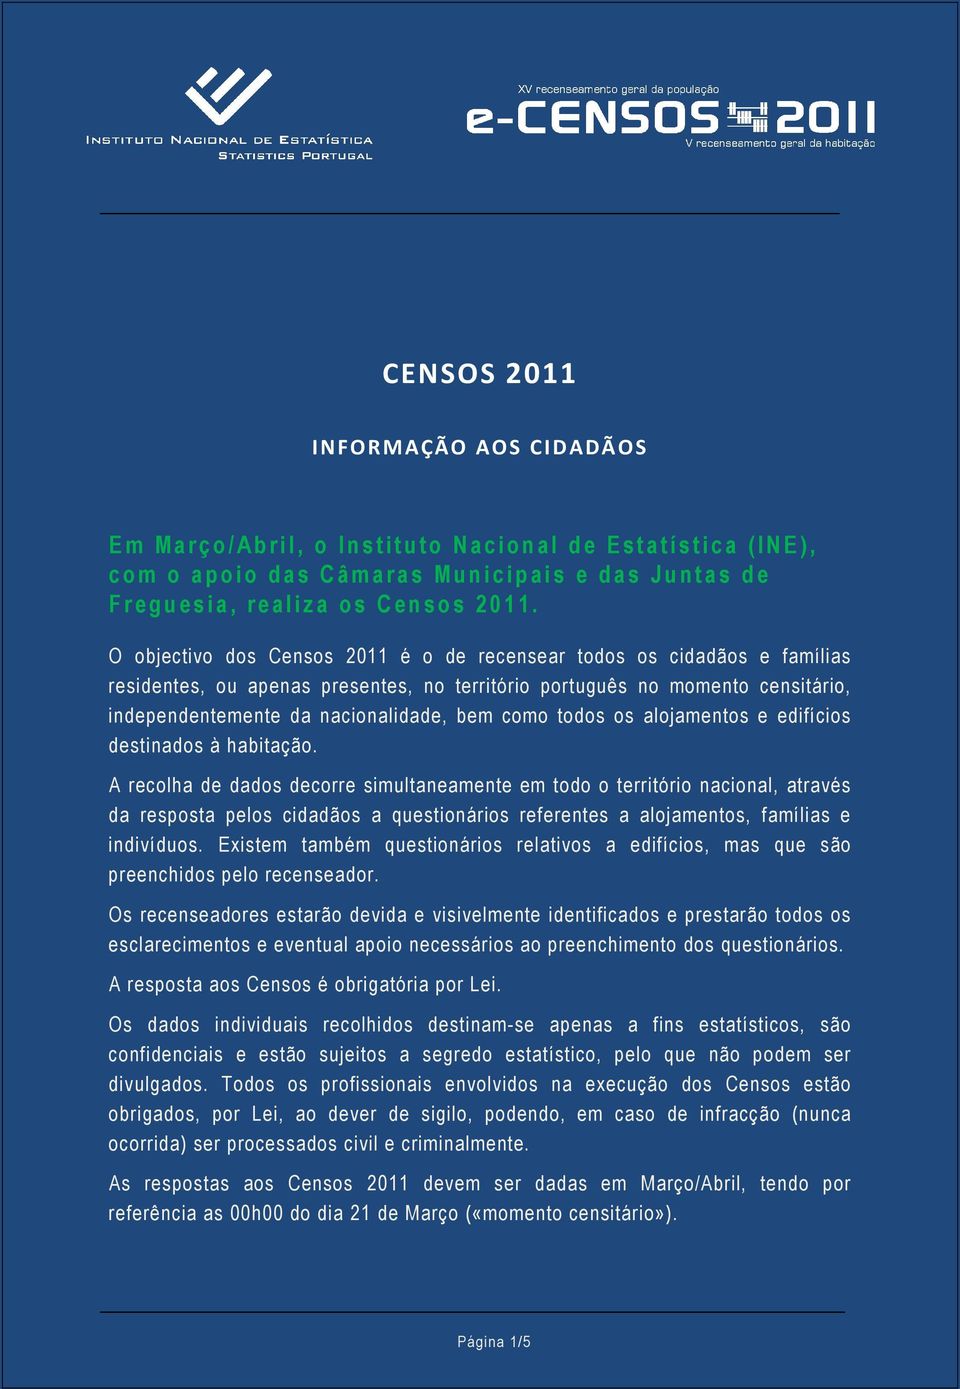 O objectivo dos Censos 2011 é o de recensear todos os cidadãos e famílias residentes, ou apenas presentes, no território português no momento censitário, independentemente da nacionalidade, bem como